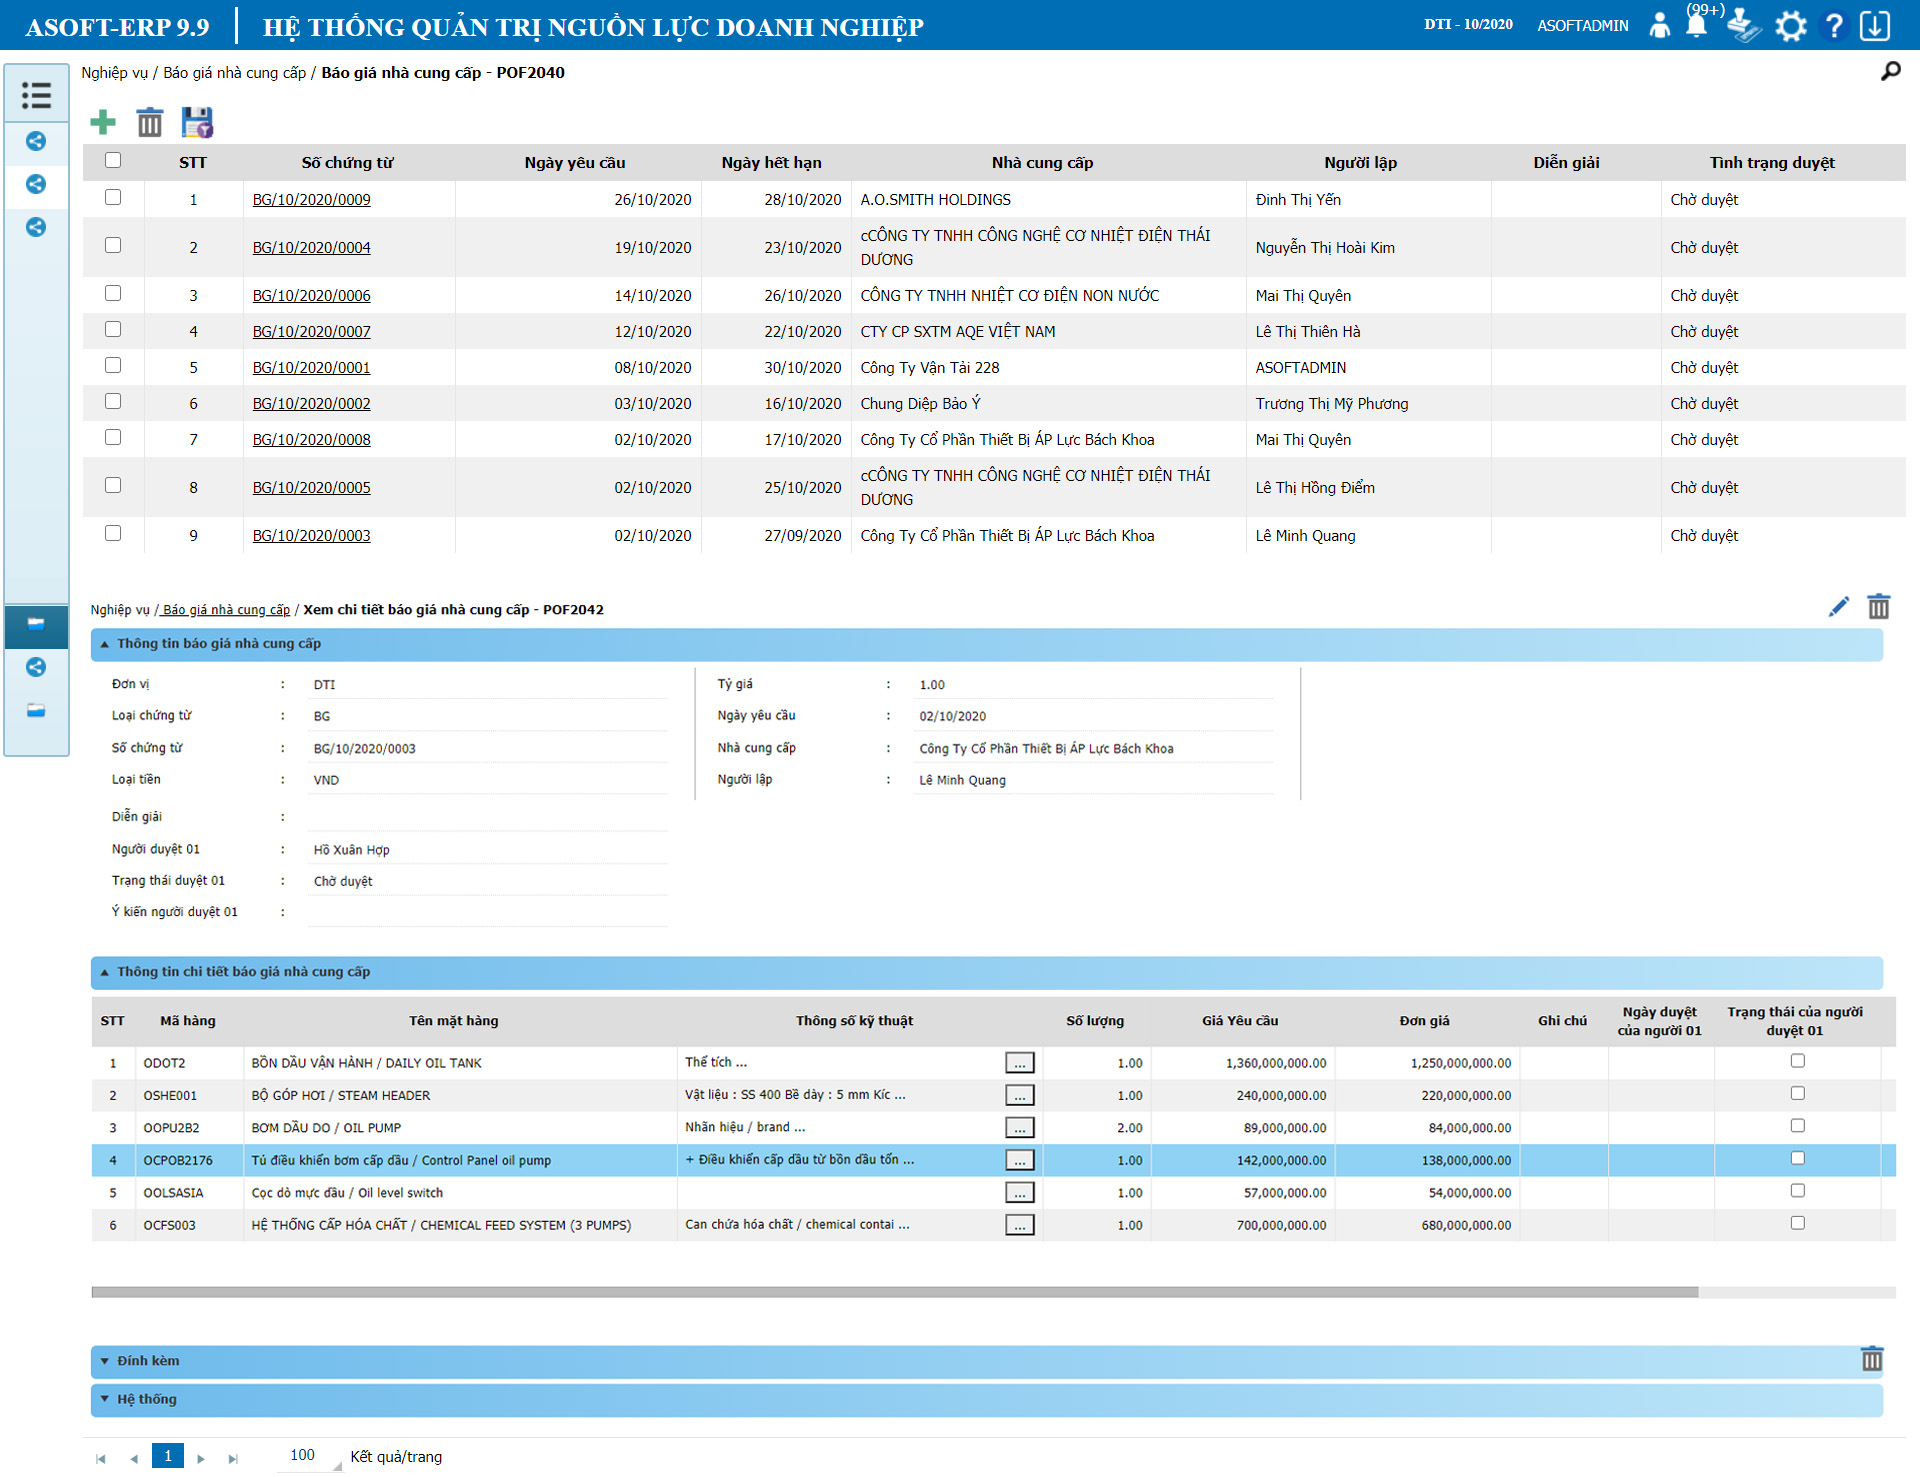 Phần mềm quản lý tổng thể doanh nghiệp ASOFT-ERP: Quản lý báo giá nhà cung cấp